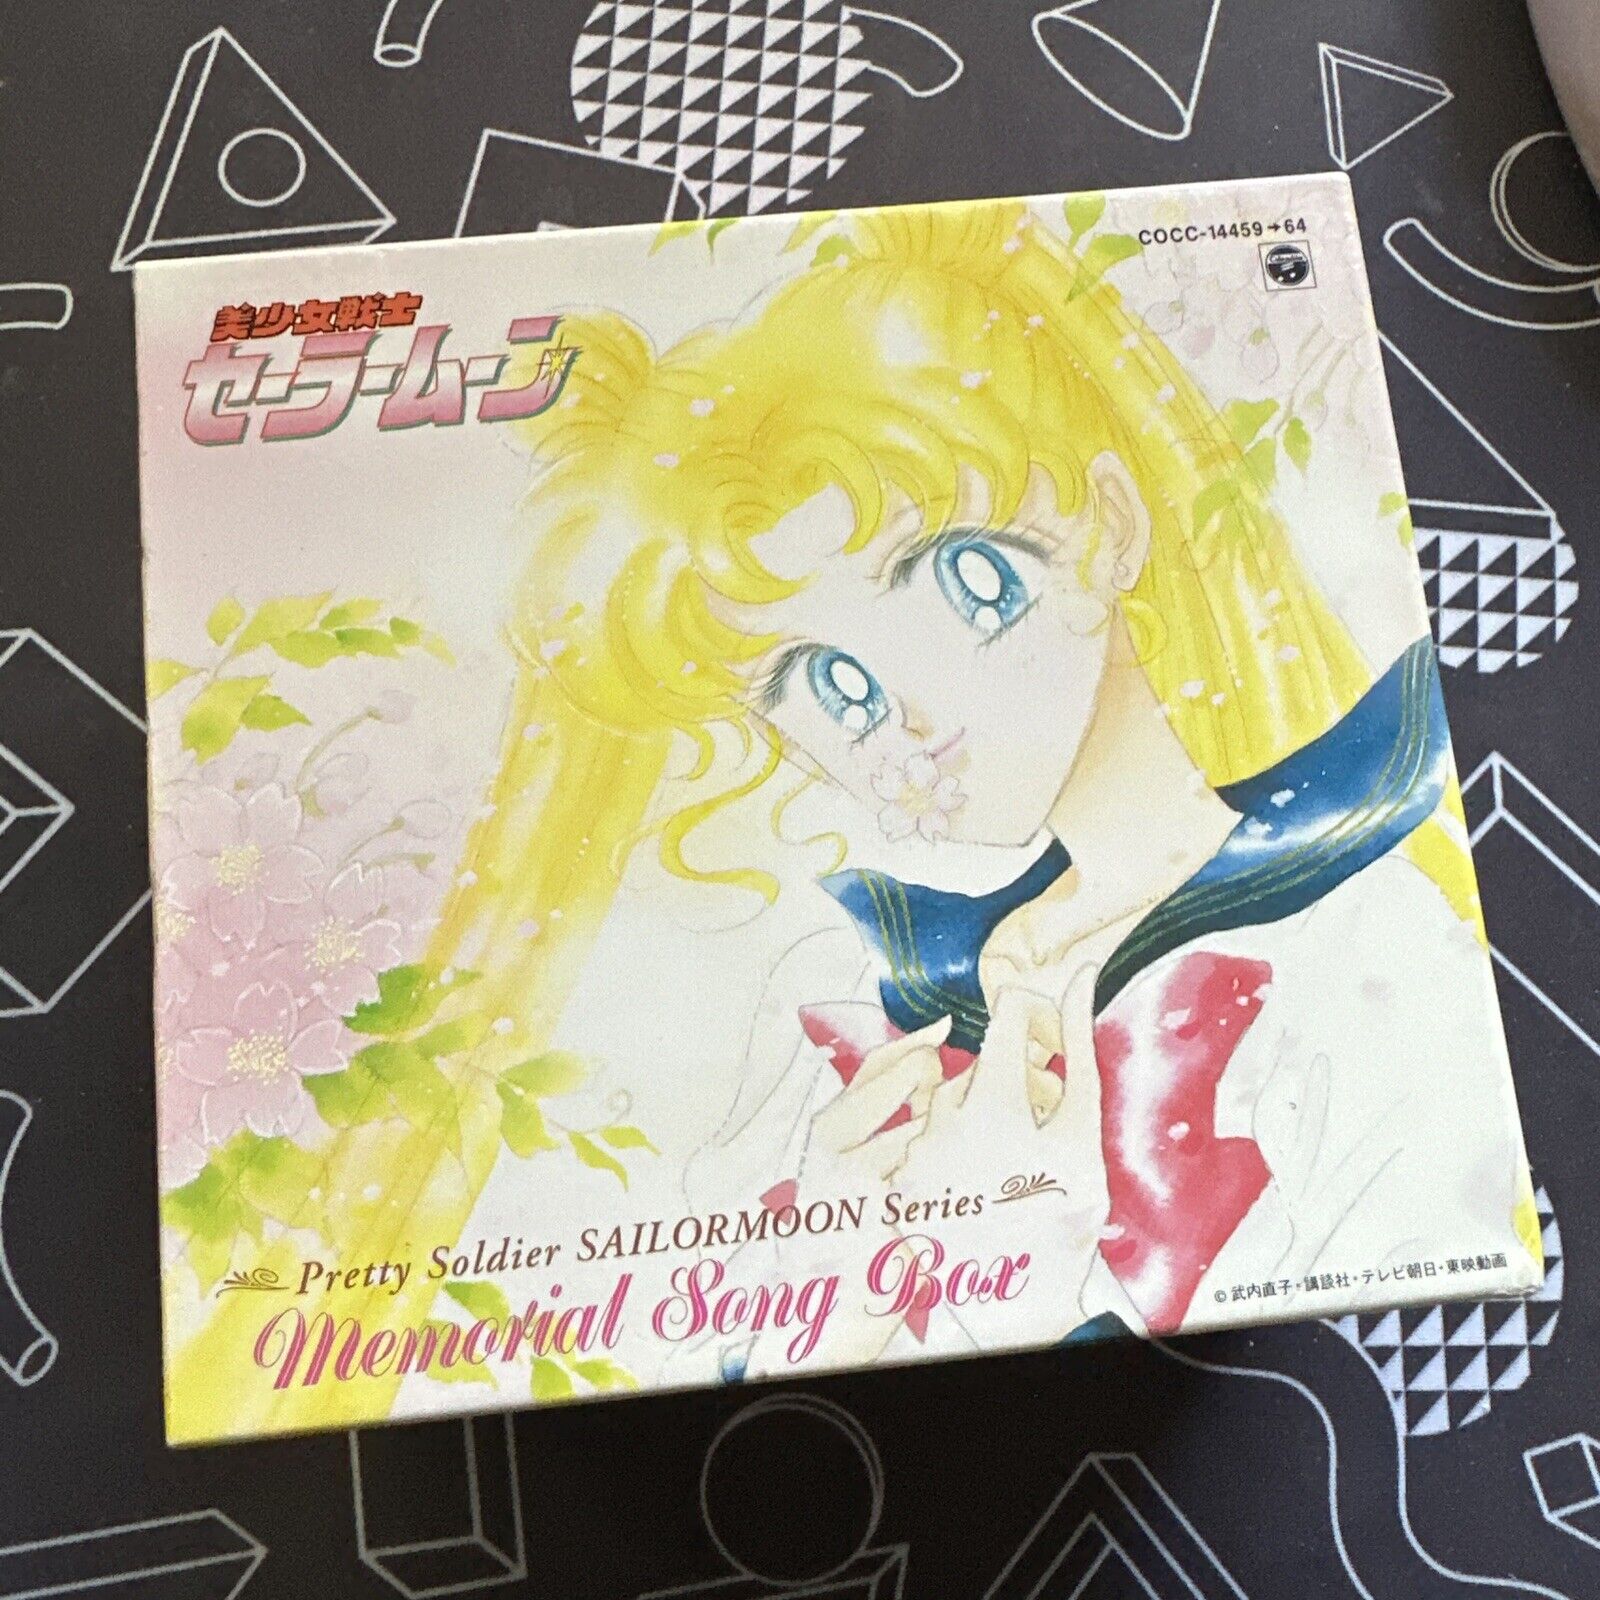 Sailor Moon Memorial Song Box CD 6 disc Booklet Original Case Anime Japan